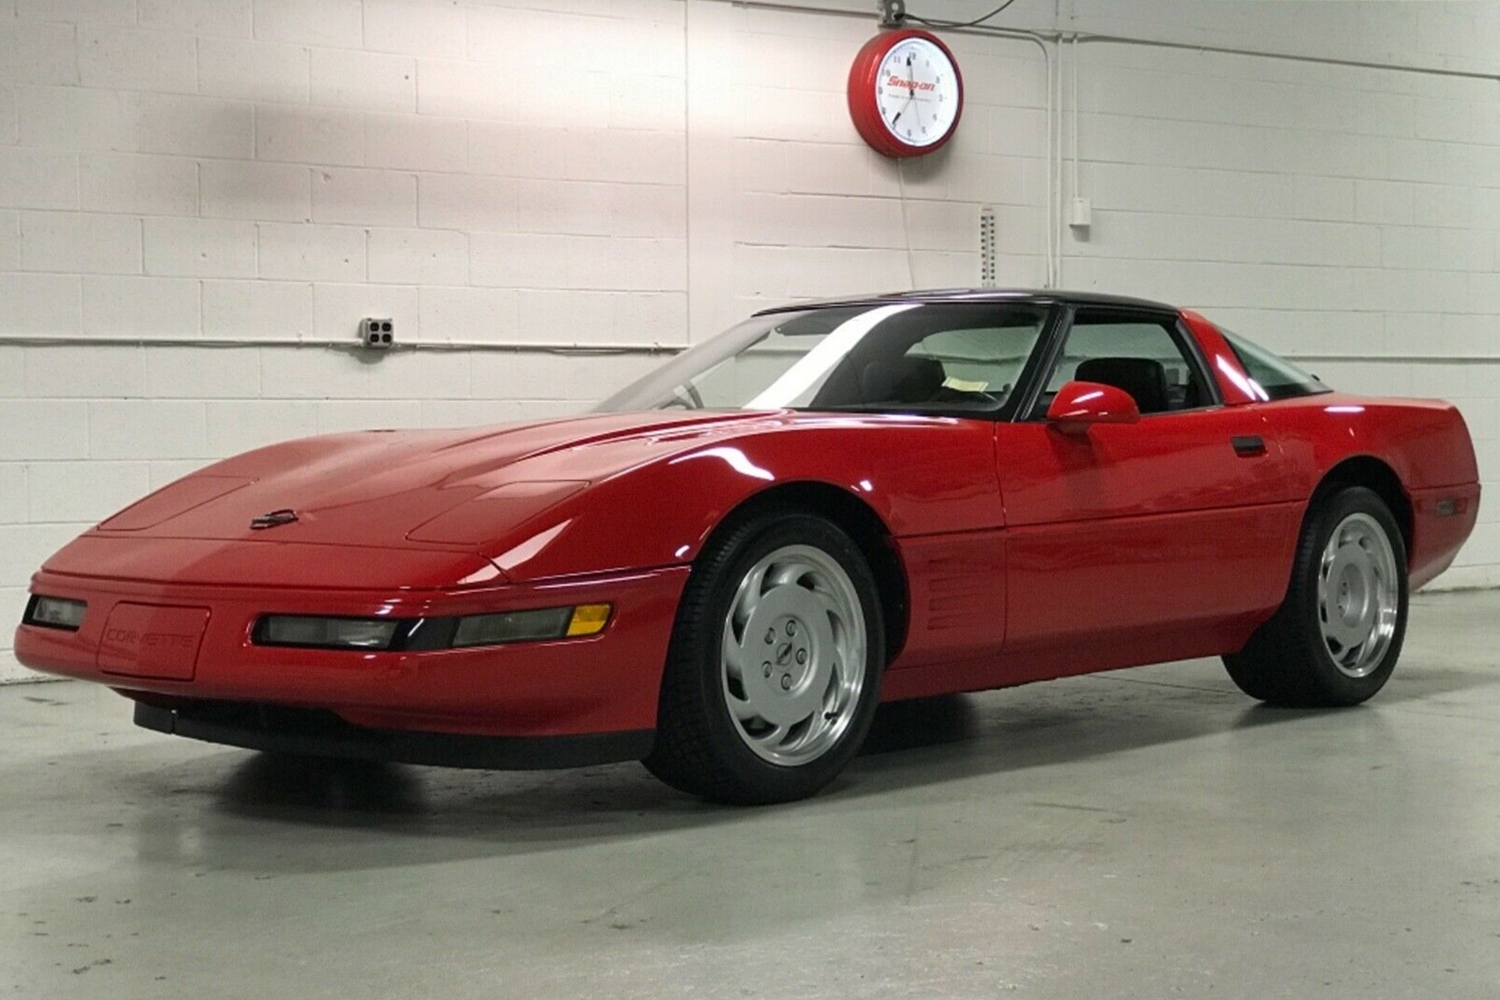 30 évig várt az első tulajdonosra ez a piros Corvette 7